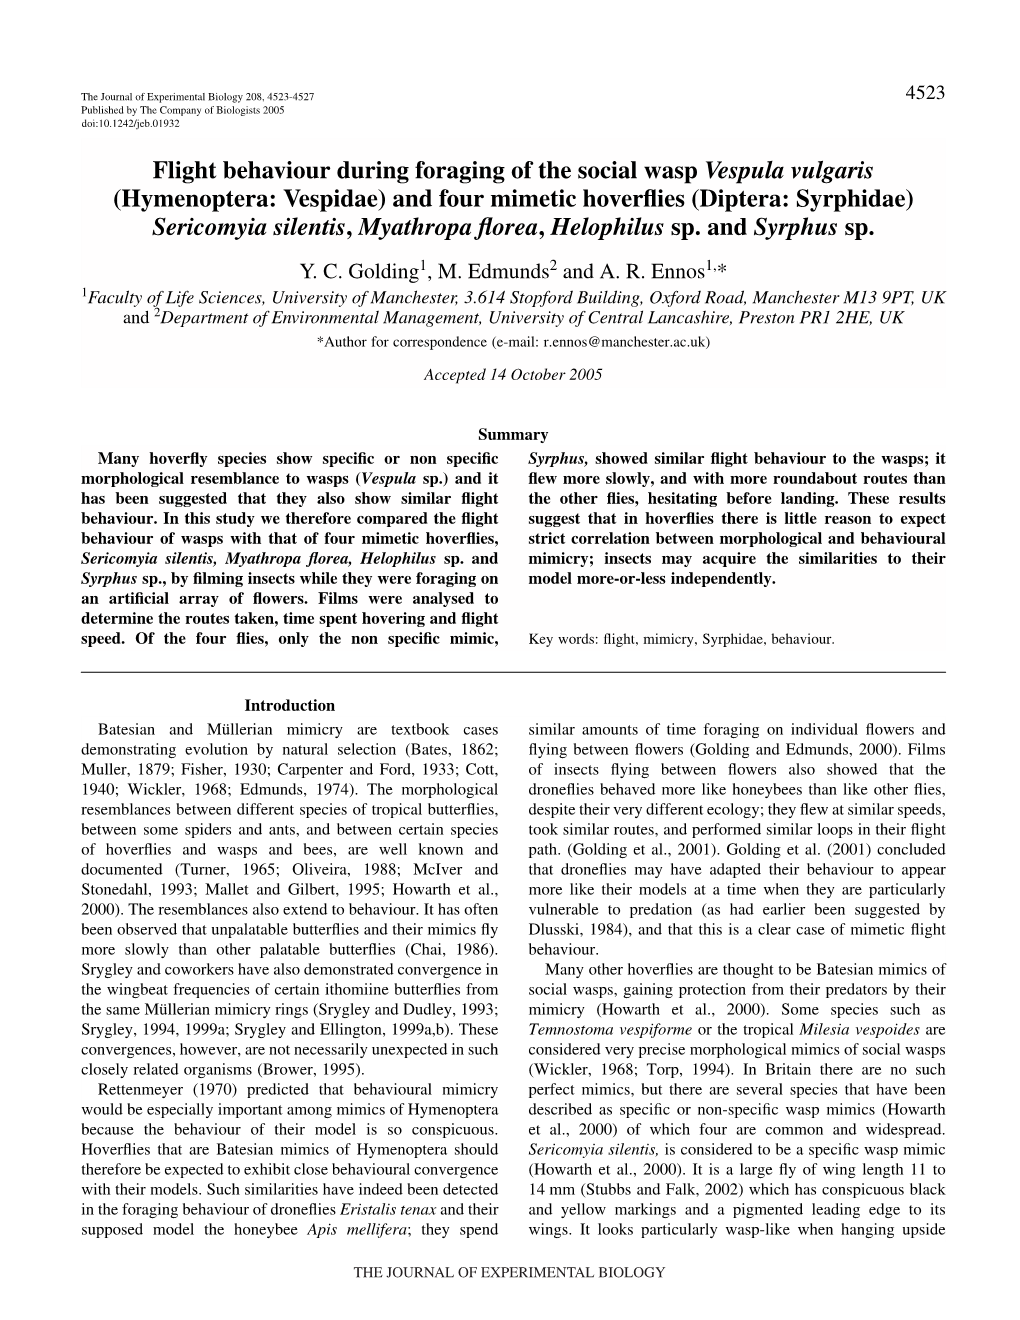 Flight Behaviour During Foraging of the Social Wasp Vespula Vulgaris